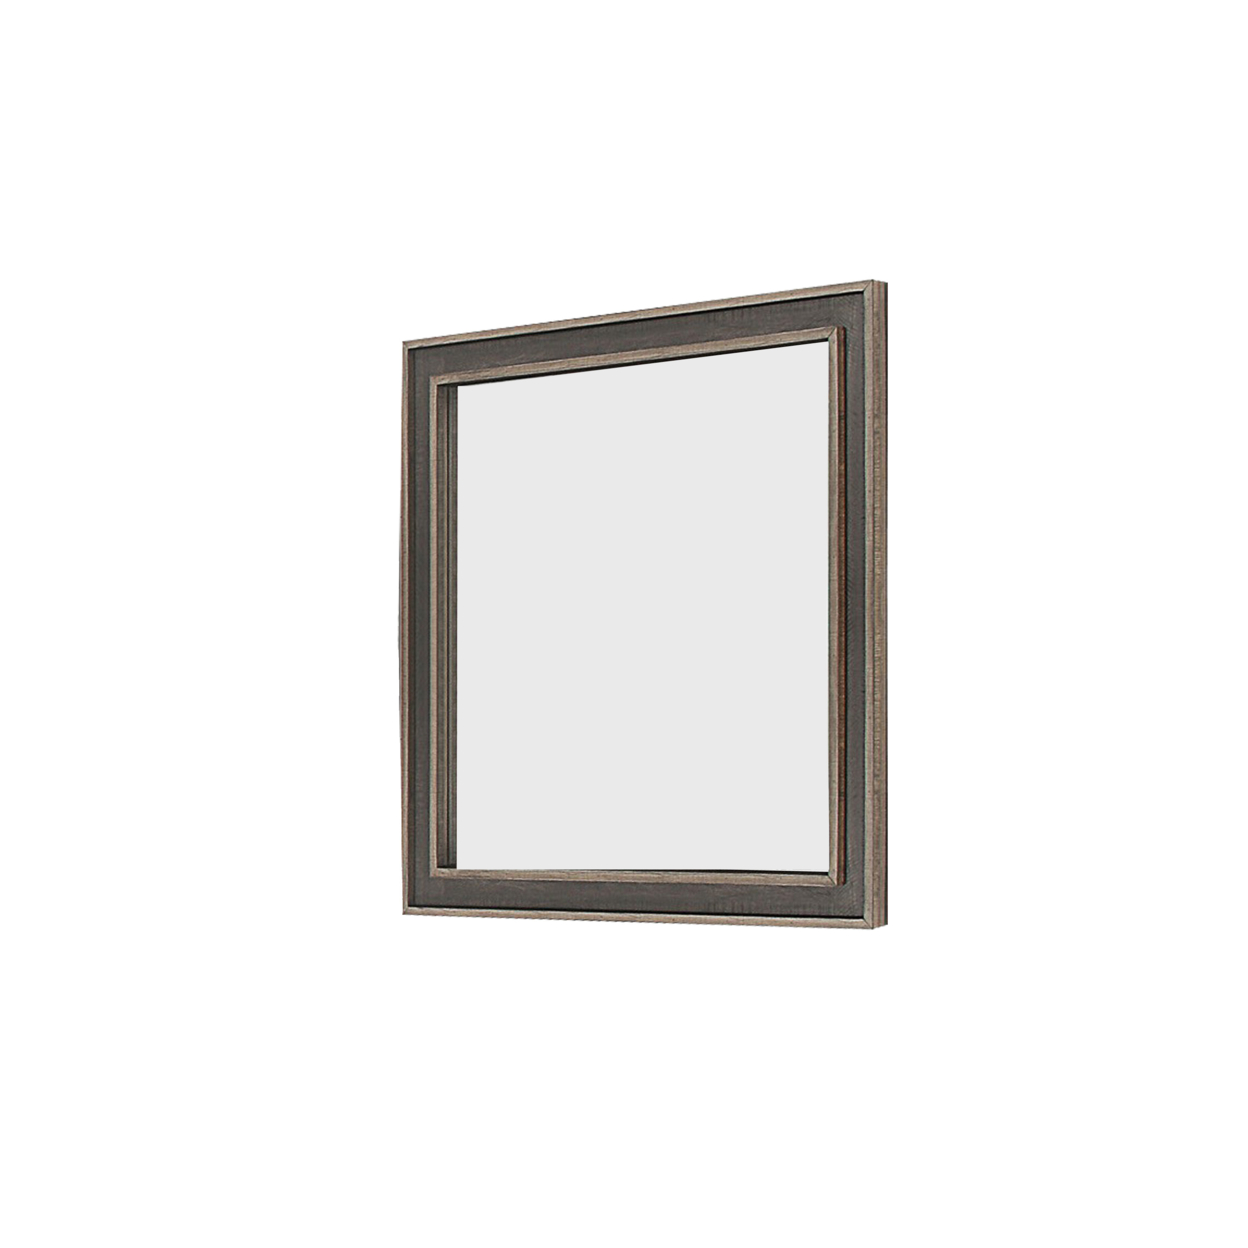 Modern Wooden Frame Dresser Mirror With Plank Design, Rustic And Dark Brown- Saltoro Sherpi